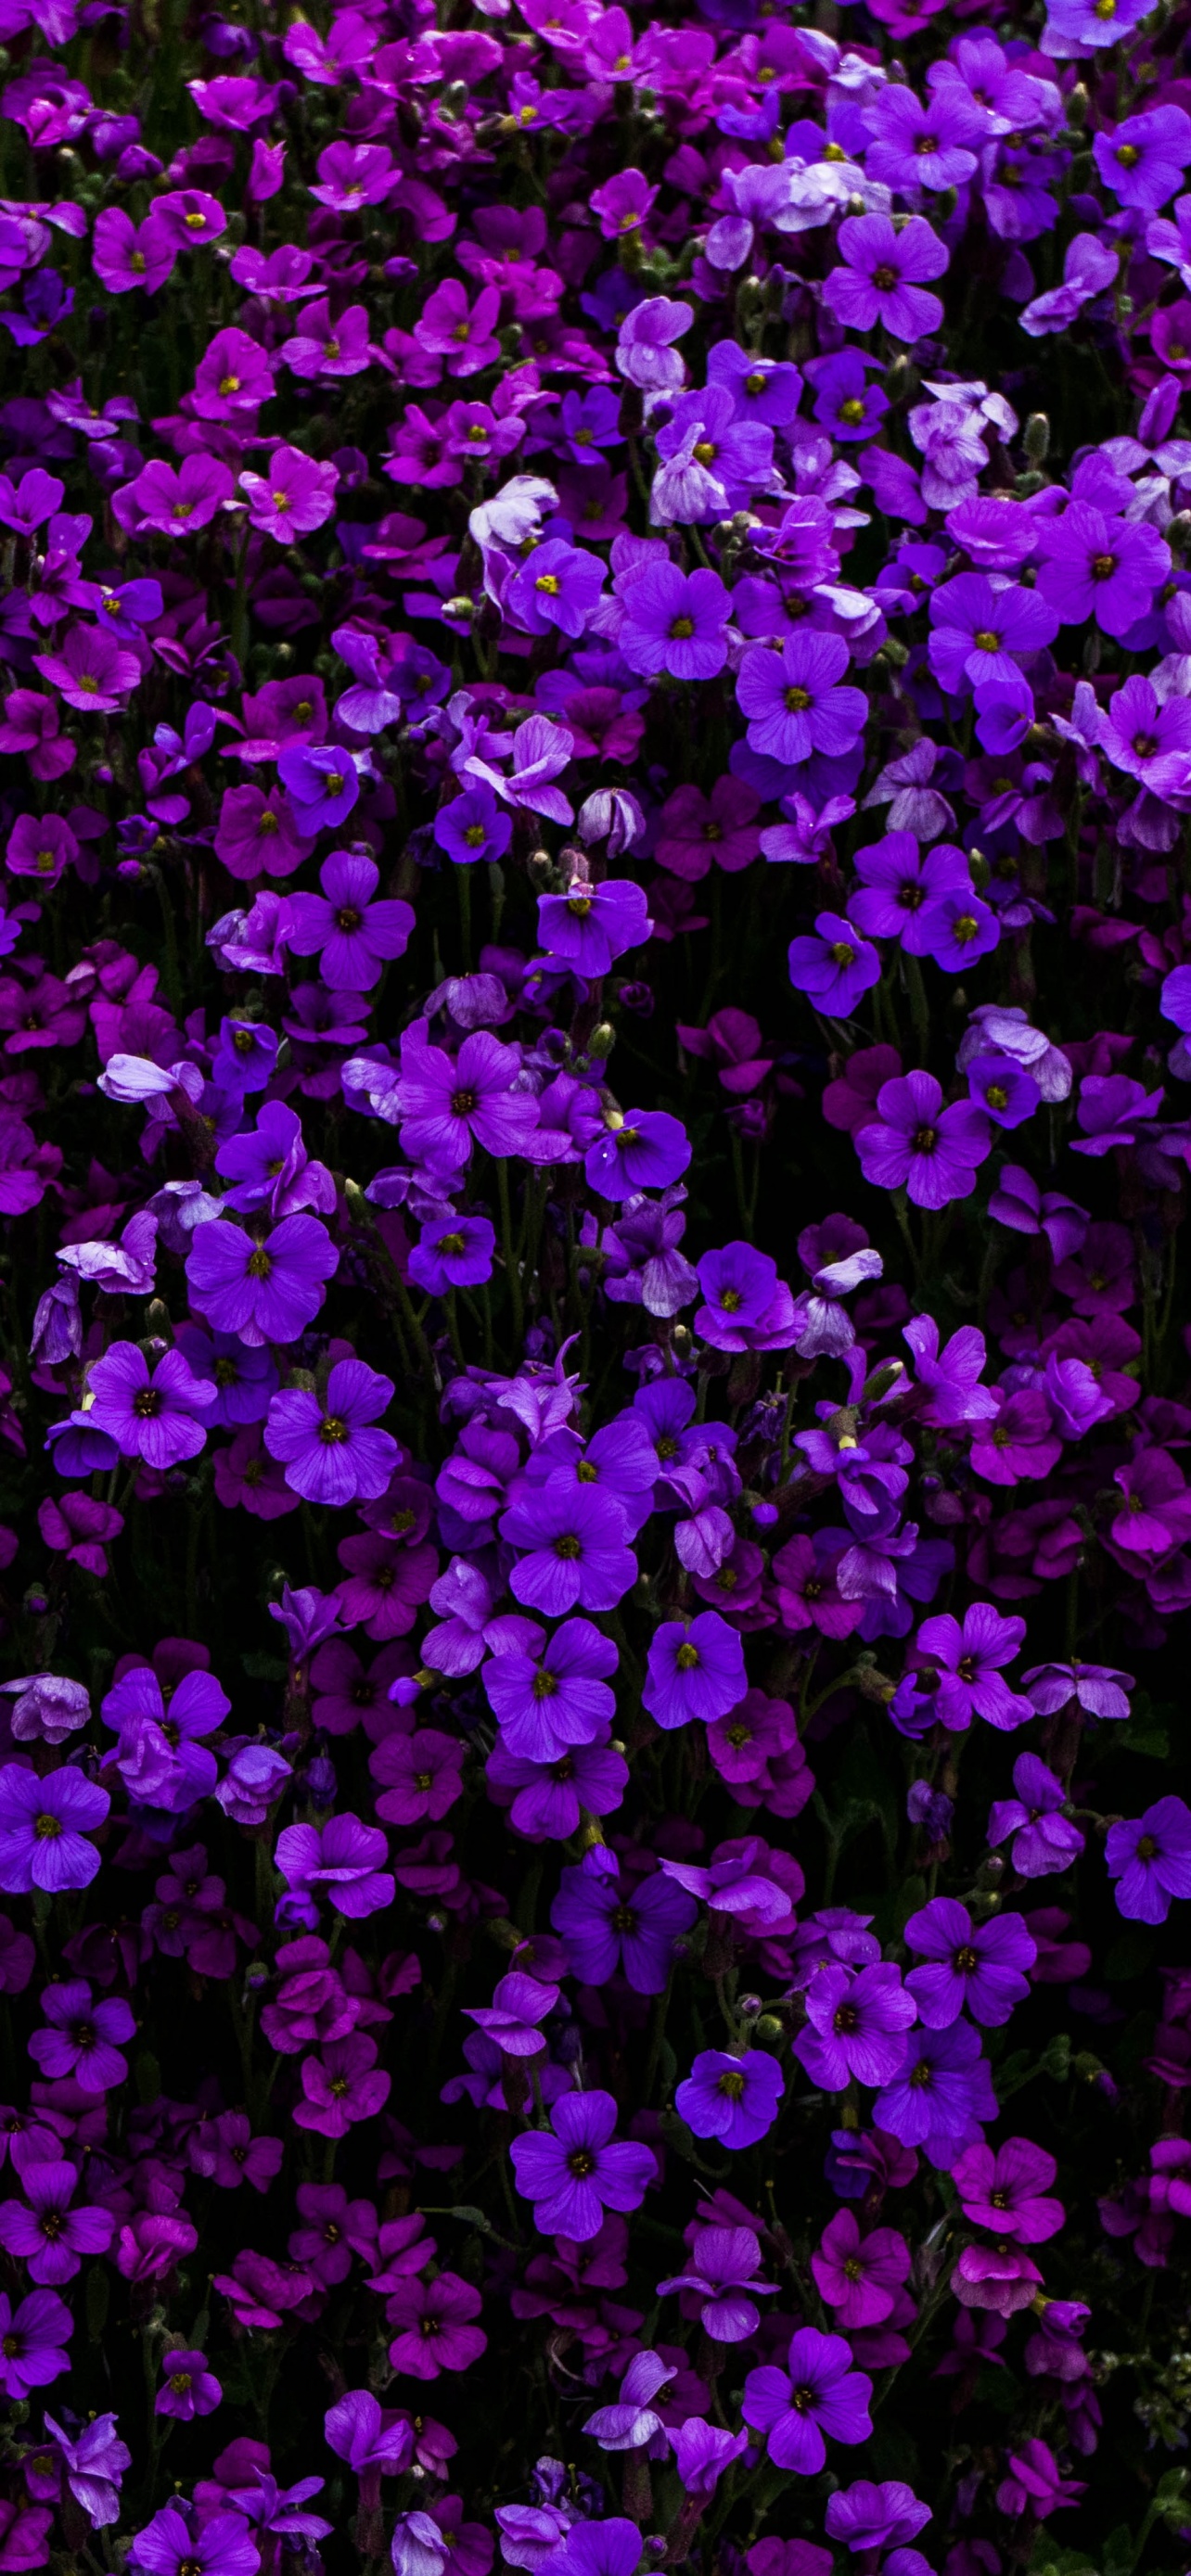 Flower Background Wallpaper Purple - Purple Flowers Background Wallpaper 1920x1200 83344 - Hd